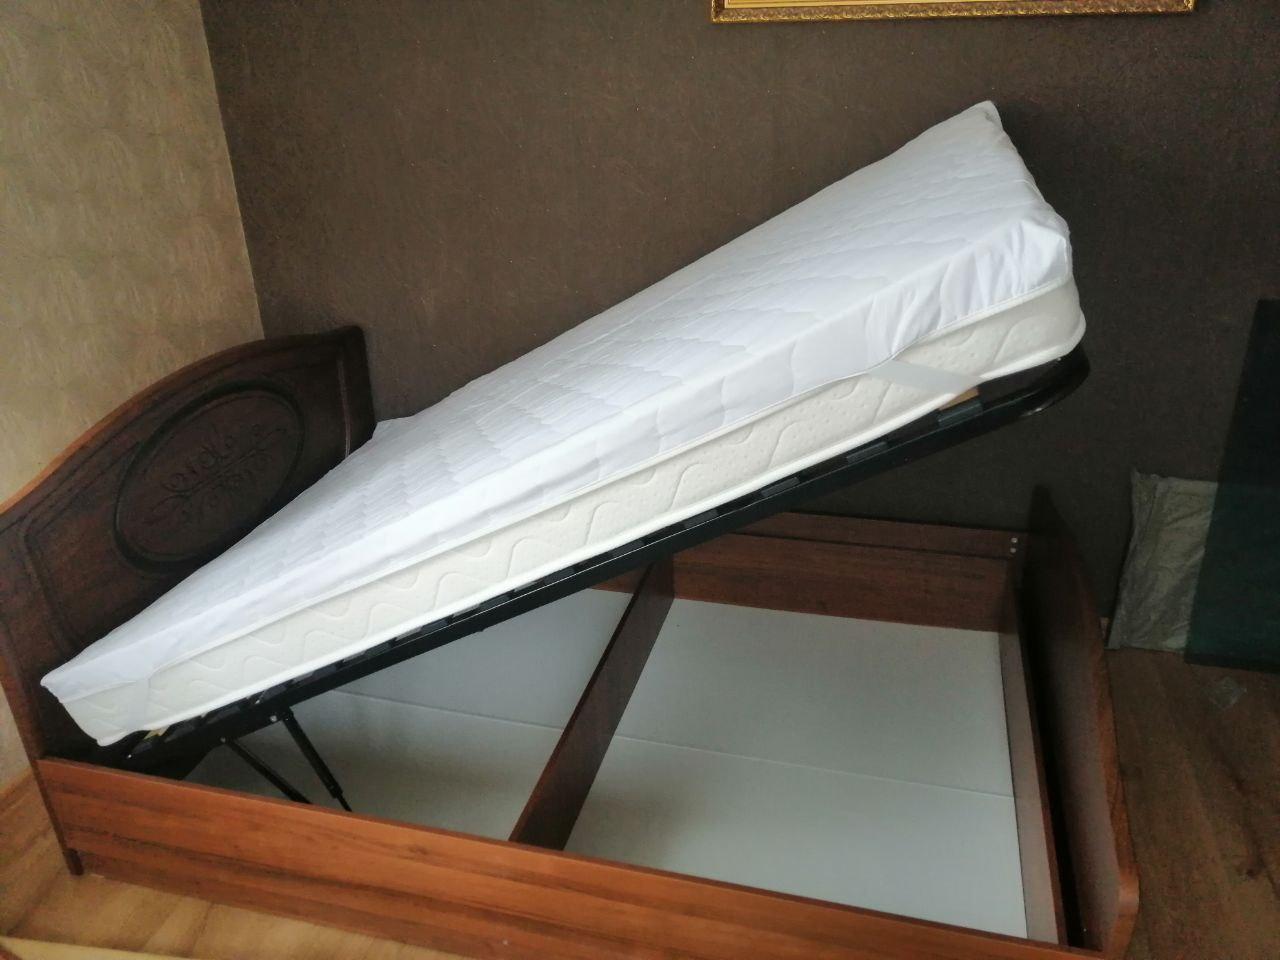 Двуспальная кровать "Натали" 140х200 с подъемным механизмом цвет клен / ясень бежевый изножье низкое